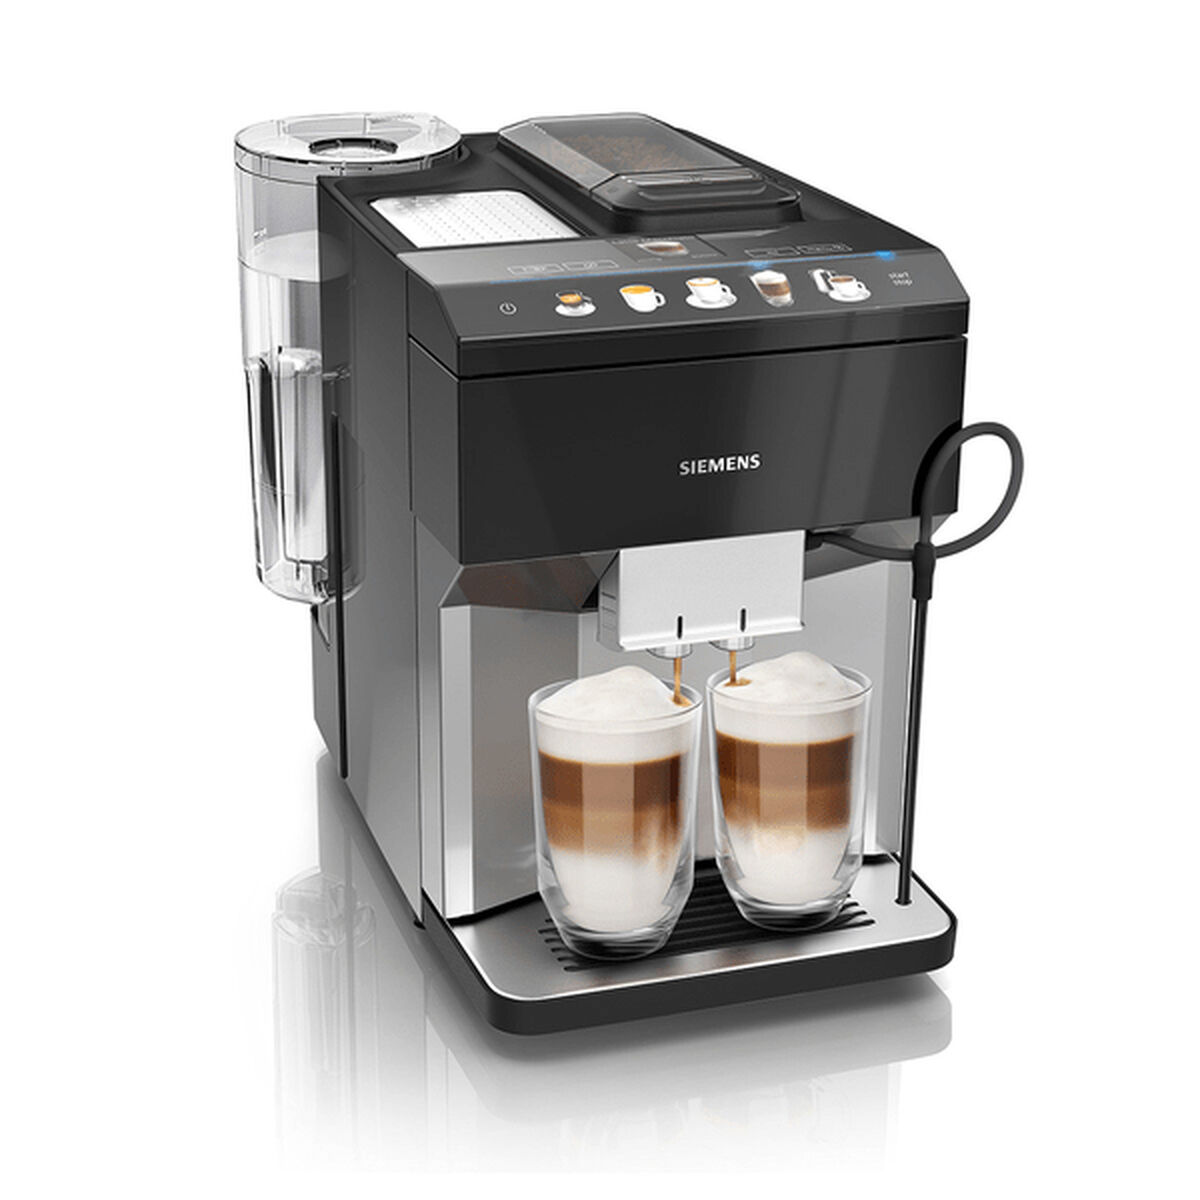 Cafetera Superautomática Siemens AG s100 Negro 1500 W 15 bar 1,7 L